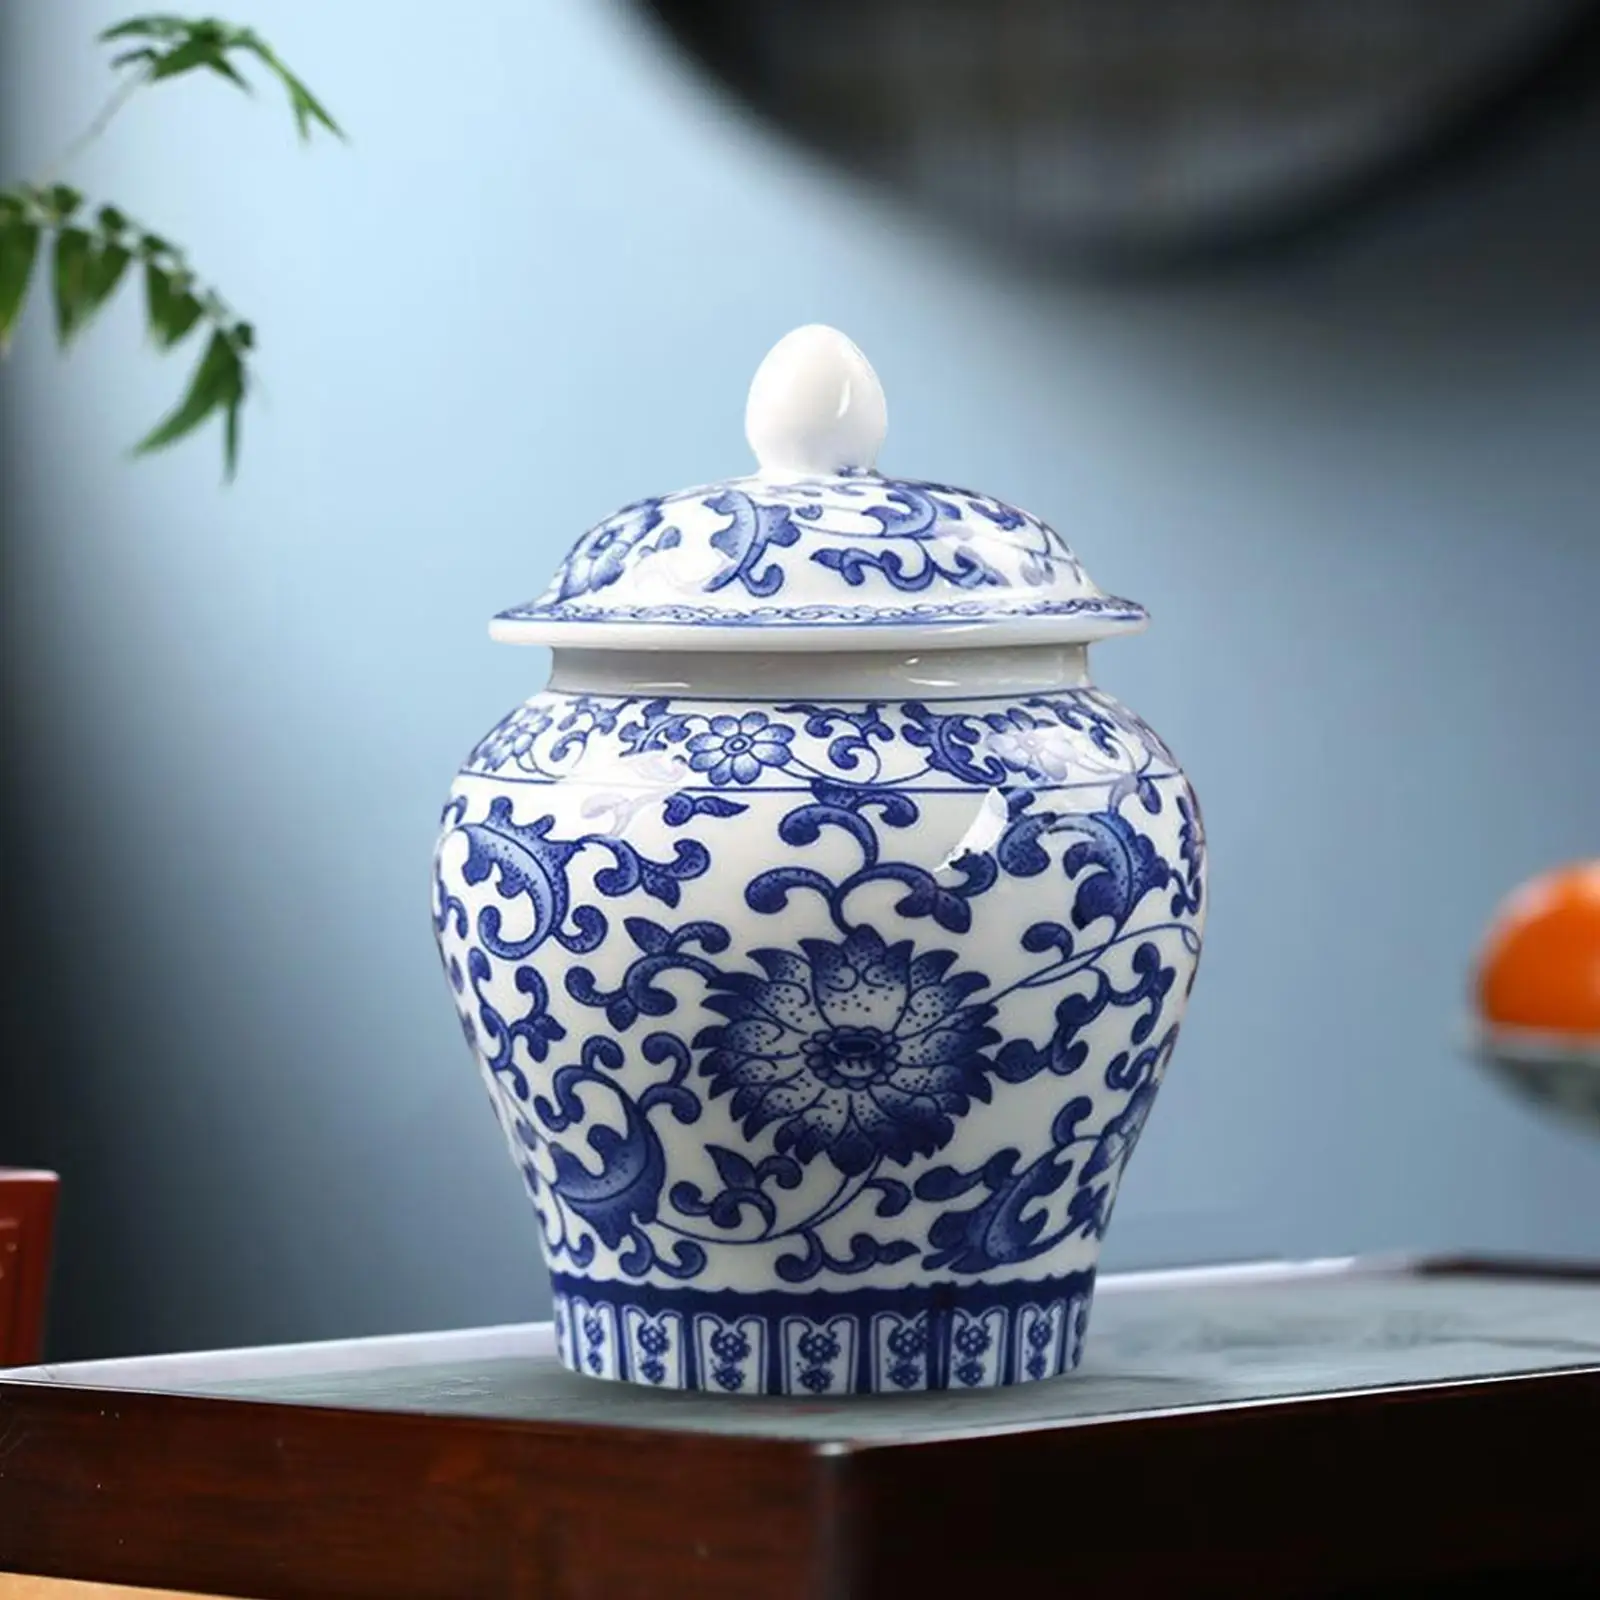 Blue and White Ceramic Glazed Ginger Jar Tea Storage Jar with Lid Living Room Decor